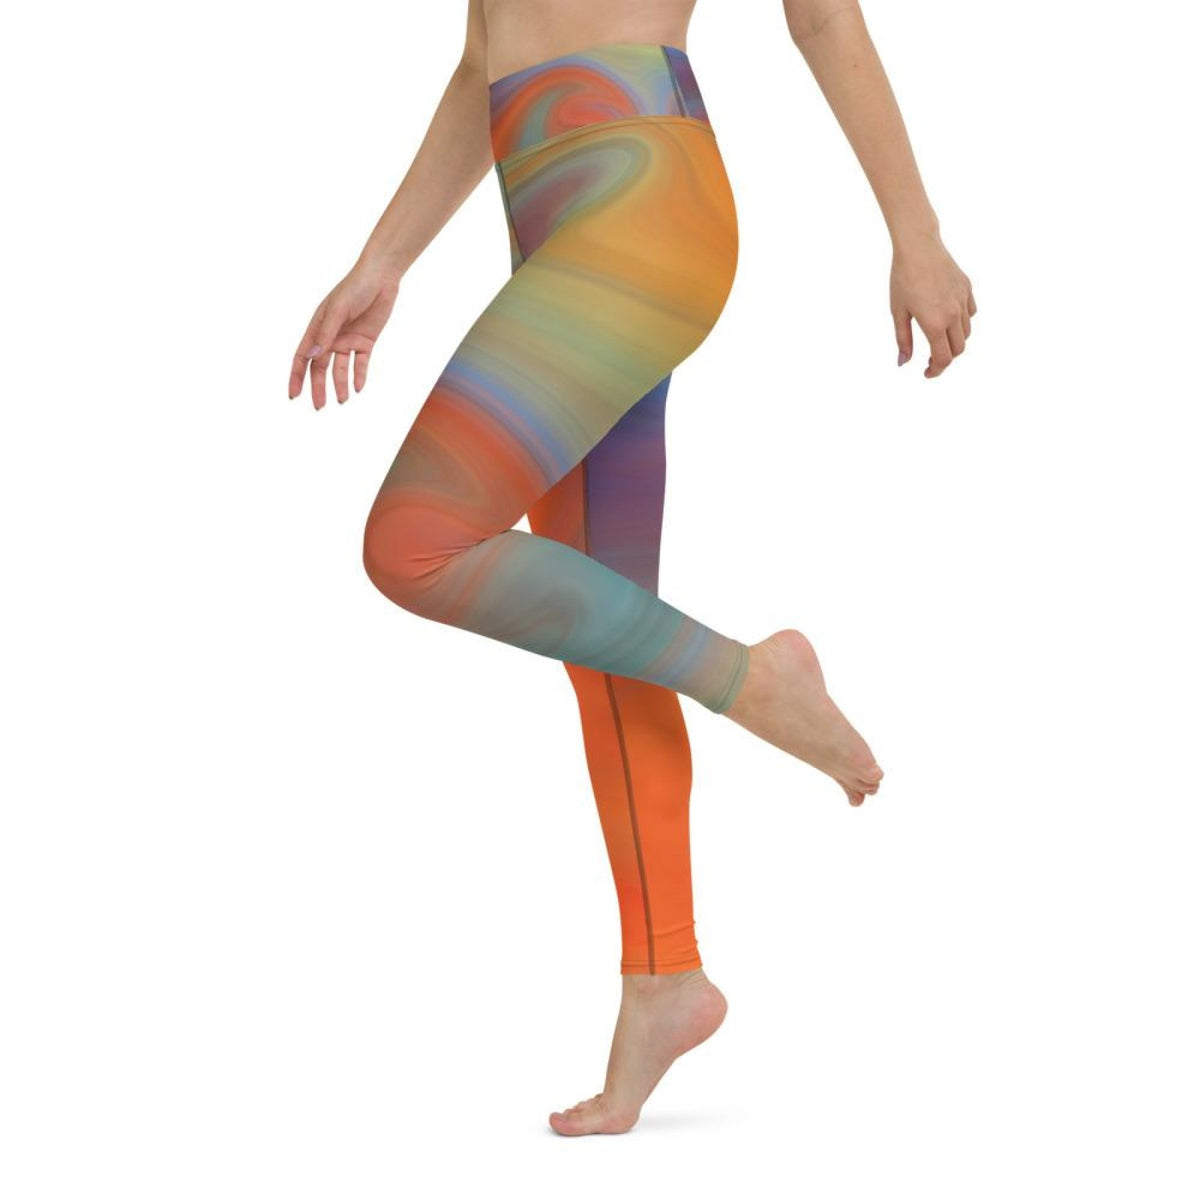 Womens Leggings - Orange Swirl Black Seam High Waist Fitness Yoga Angelwarriorfitness.com